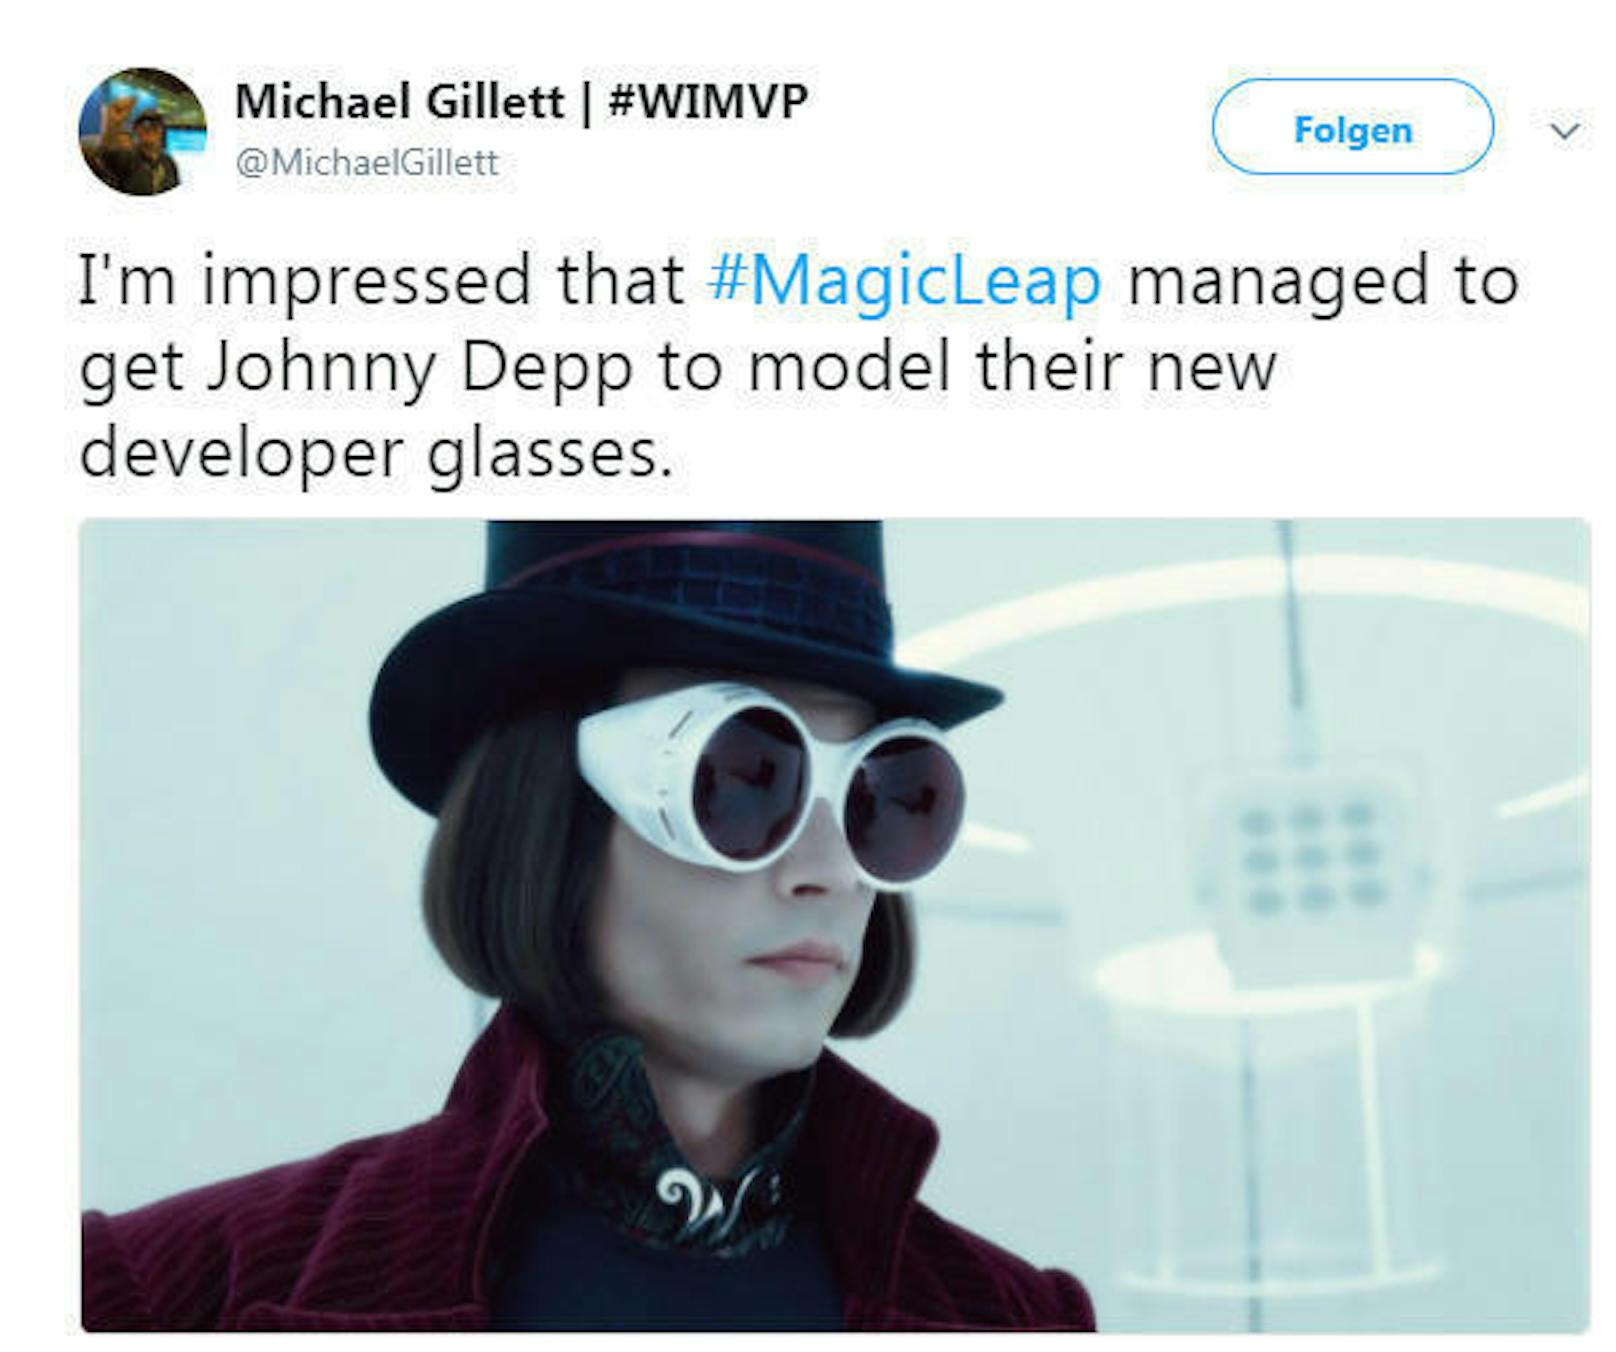 "Ich bin beeindruckt, dass Magic Leap Johnny Depp dazu bringen konnte, für die neue Cyberbrille zu modeln", schreibt Michael Gillett auf Twitter.